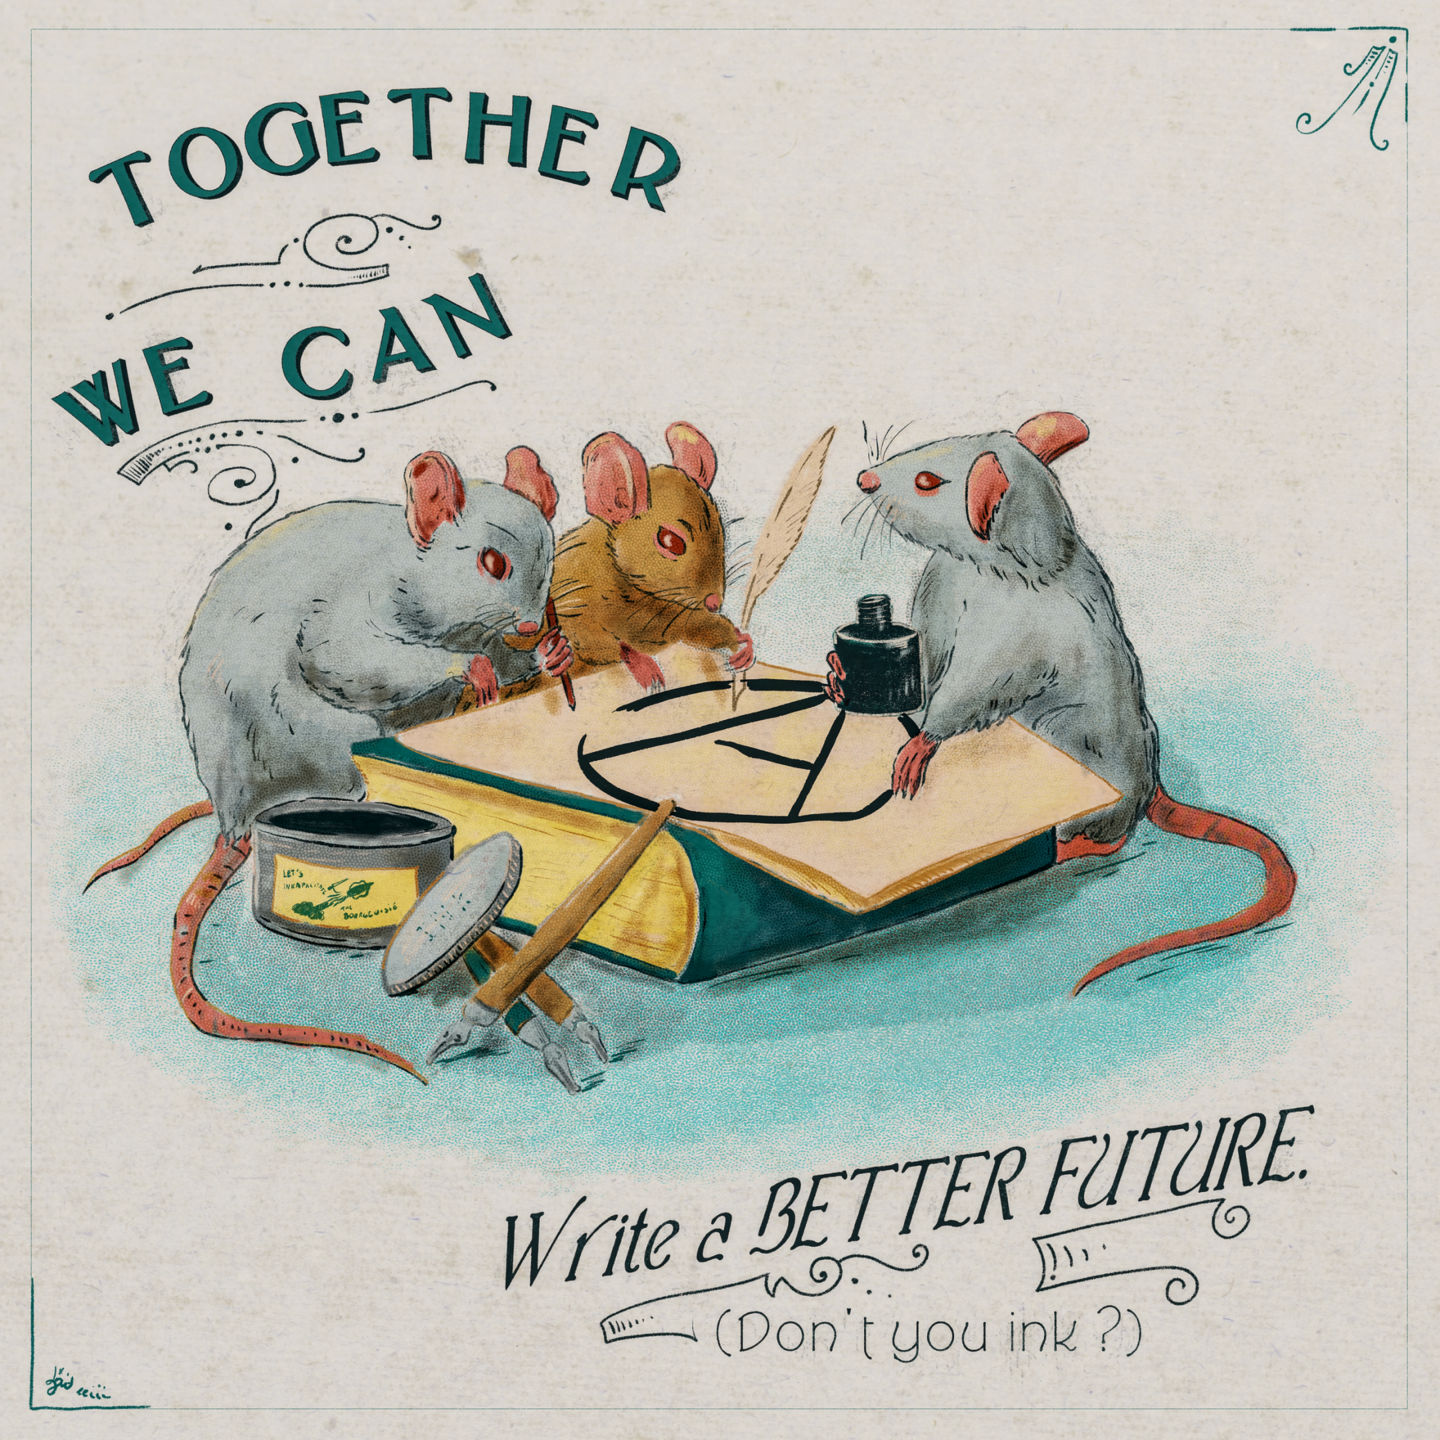 Trois souris en train de tracer un A cerclé. Légende : together we can write a better future.